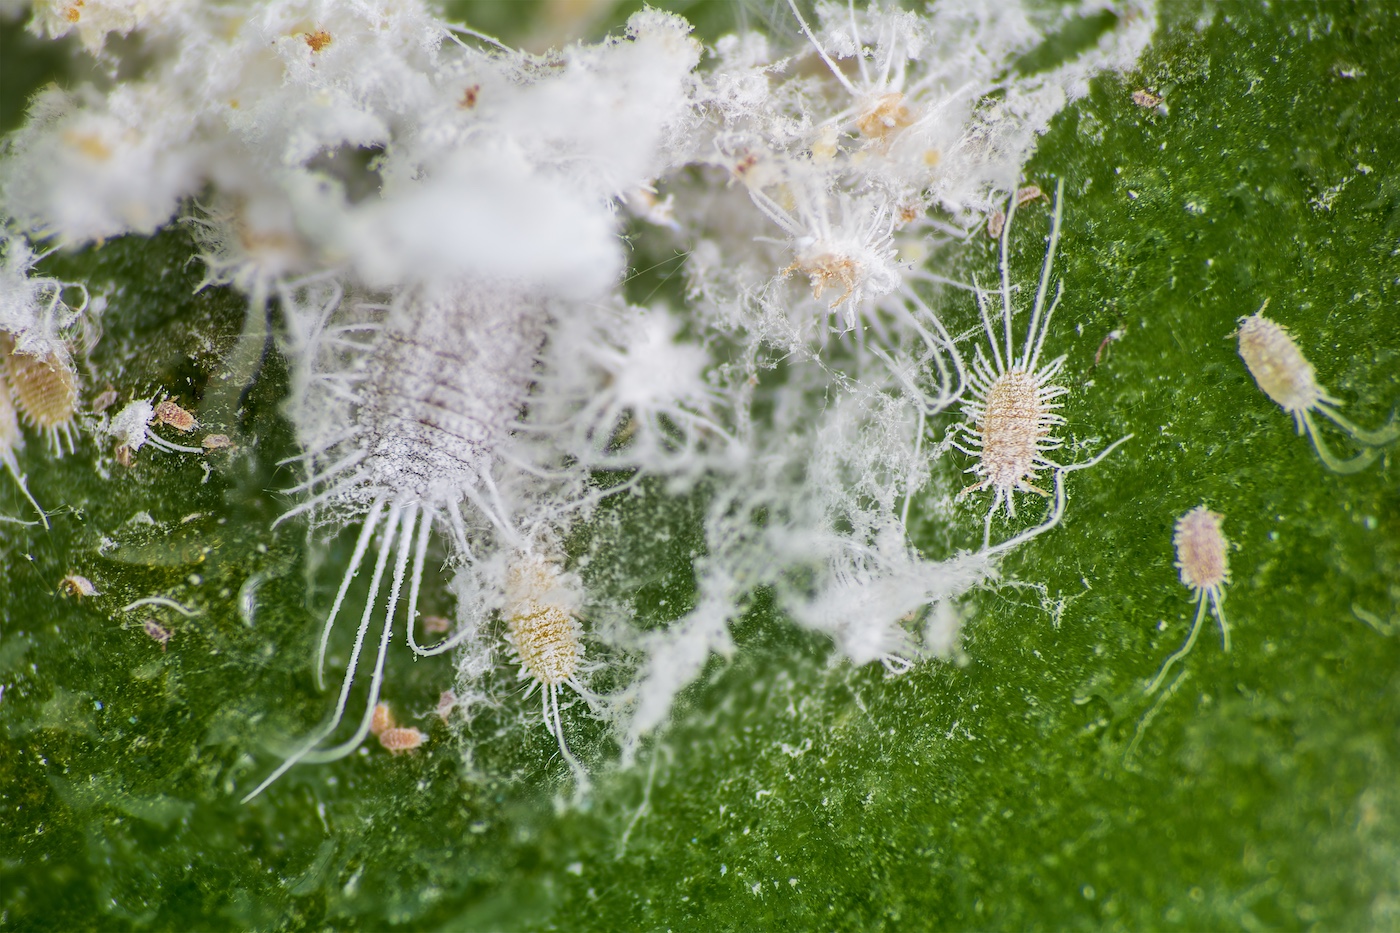 粉虱在植物表面繁衍生息